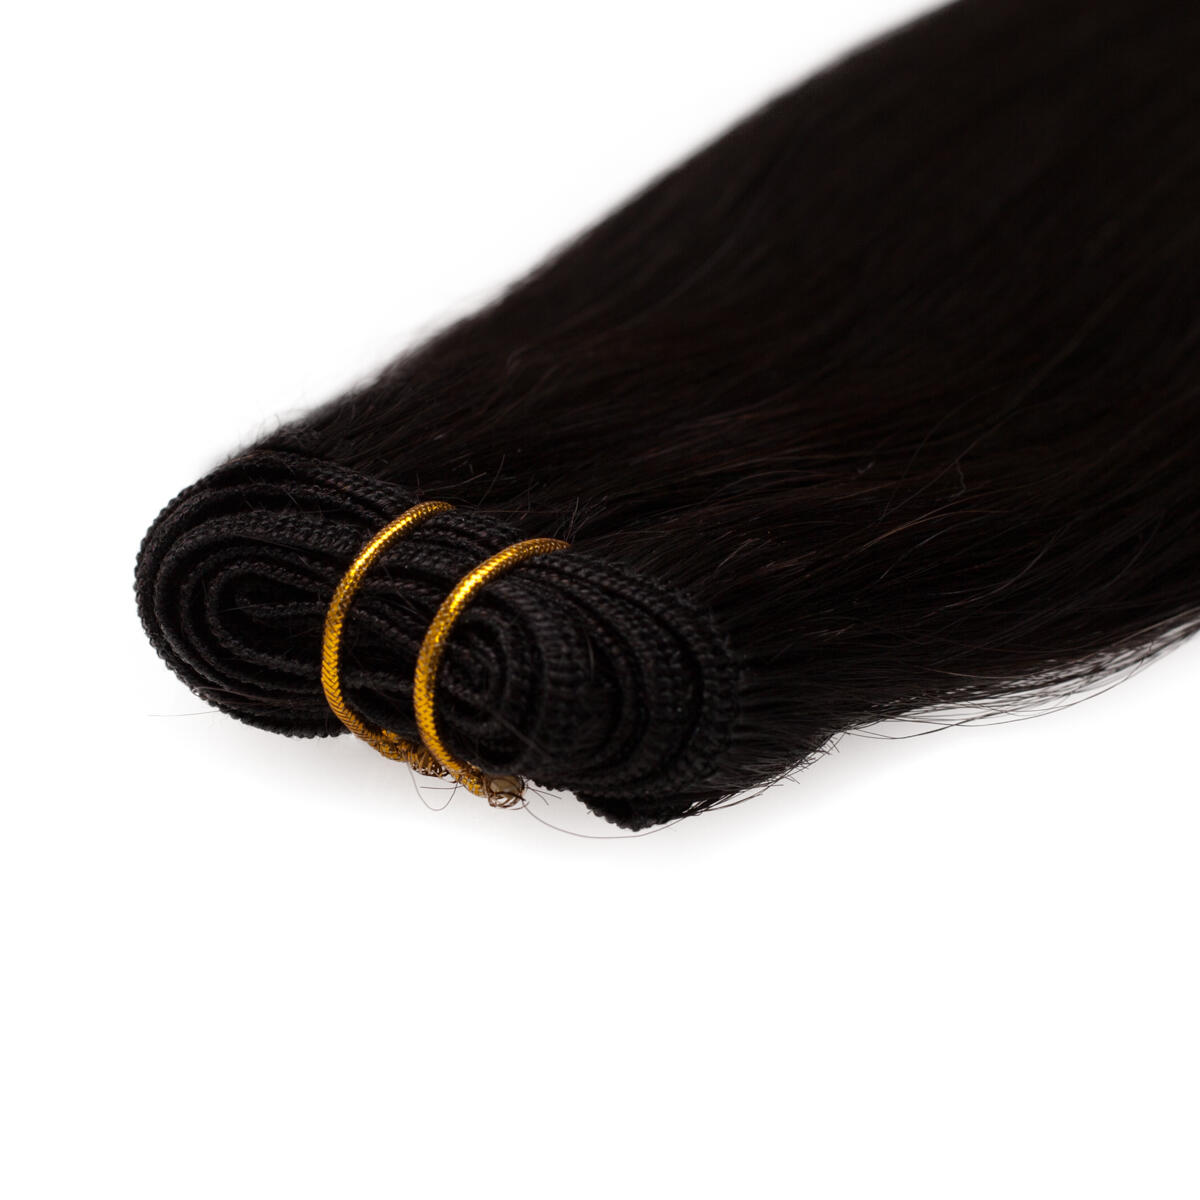 Hair Weft 1.2 Black Brown 50 cm